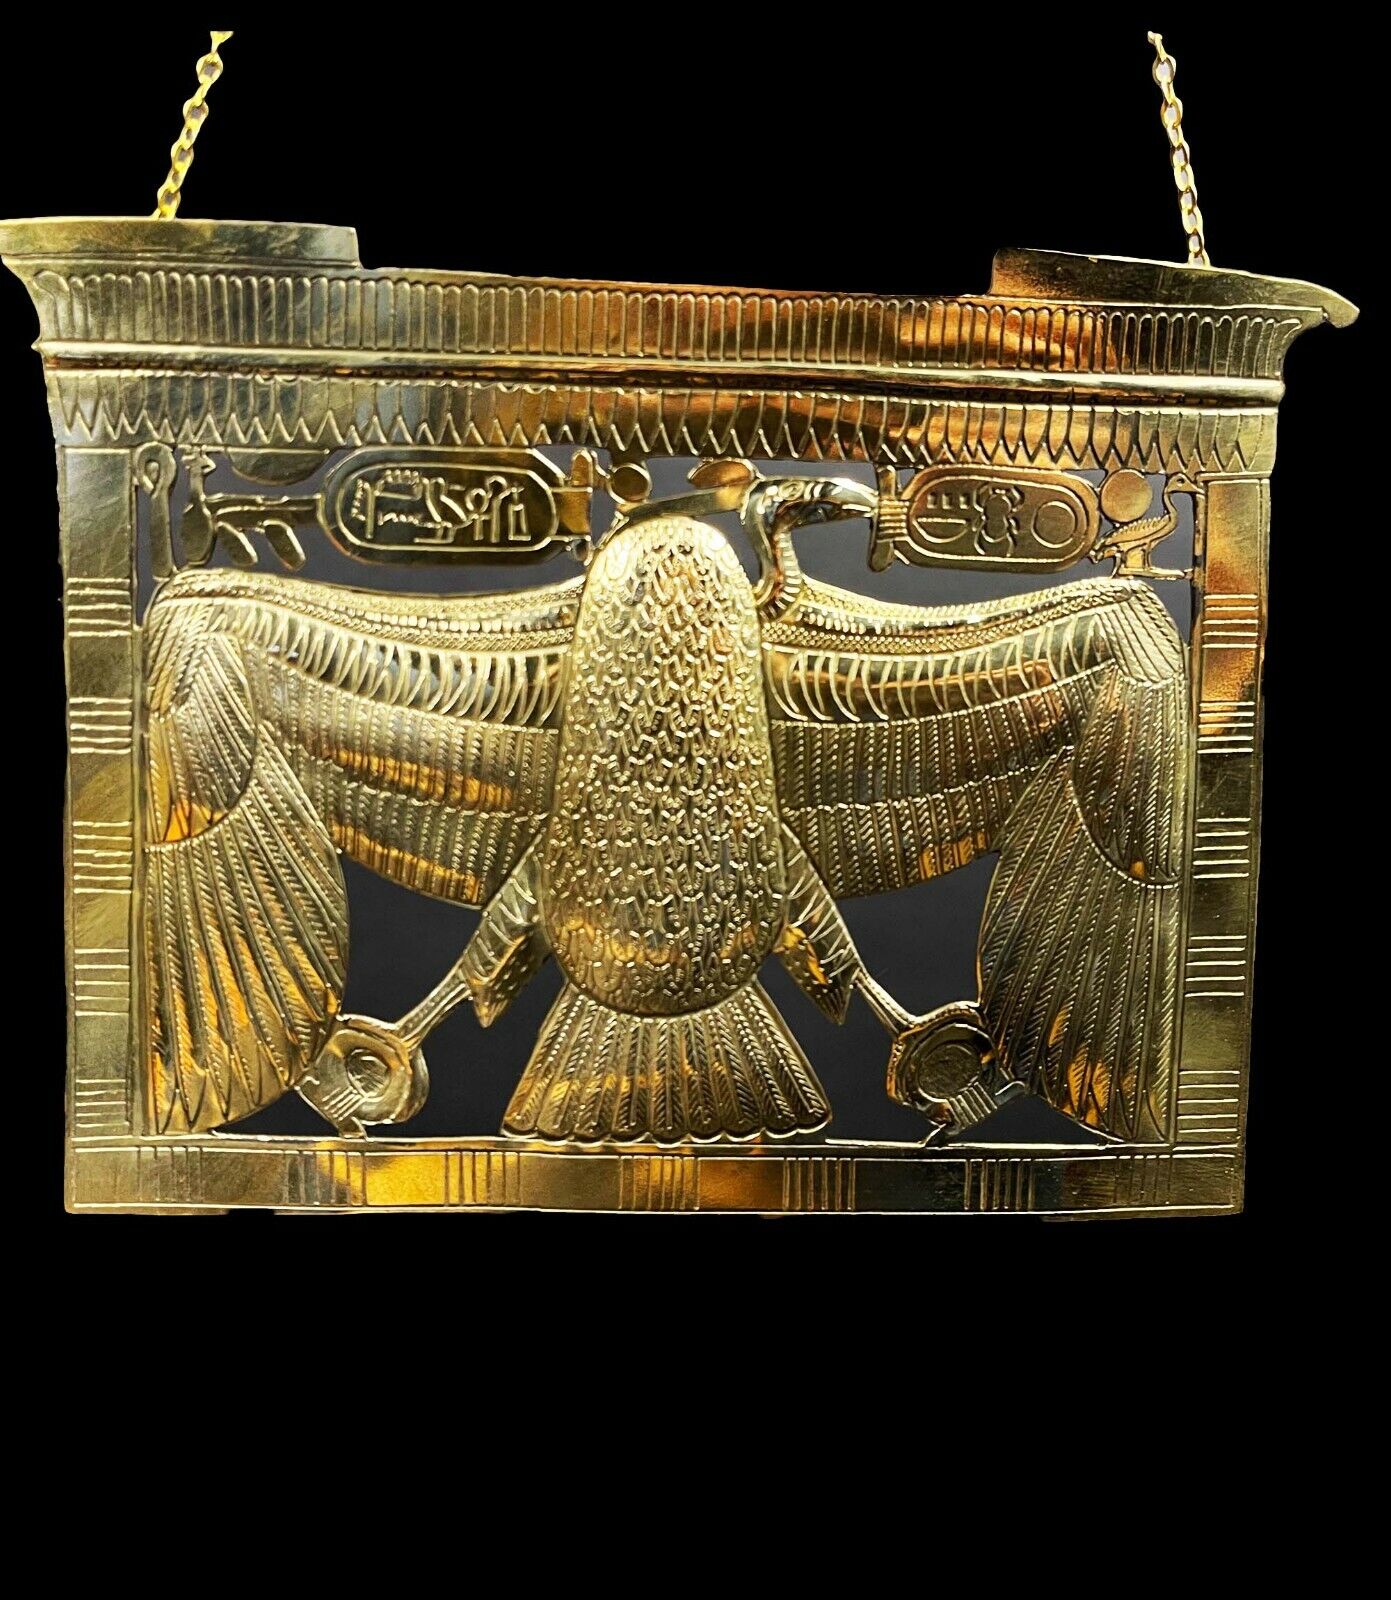 Fantastic Egyptian Pendant of Nekhbet The protector (patron) of upper Egypt